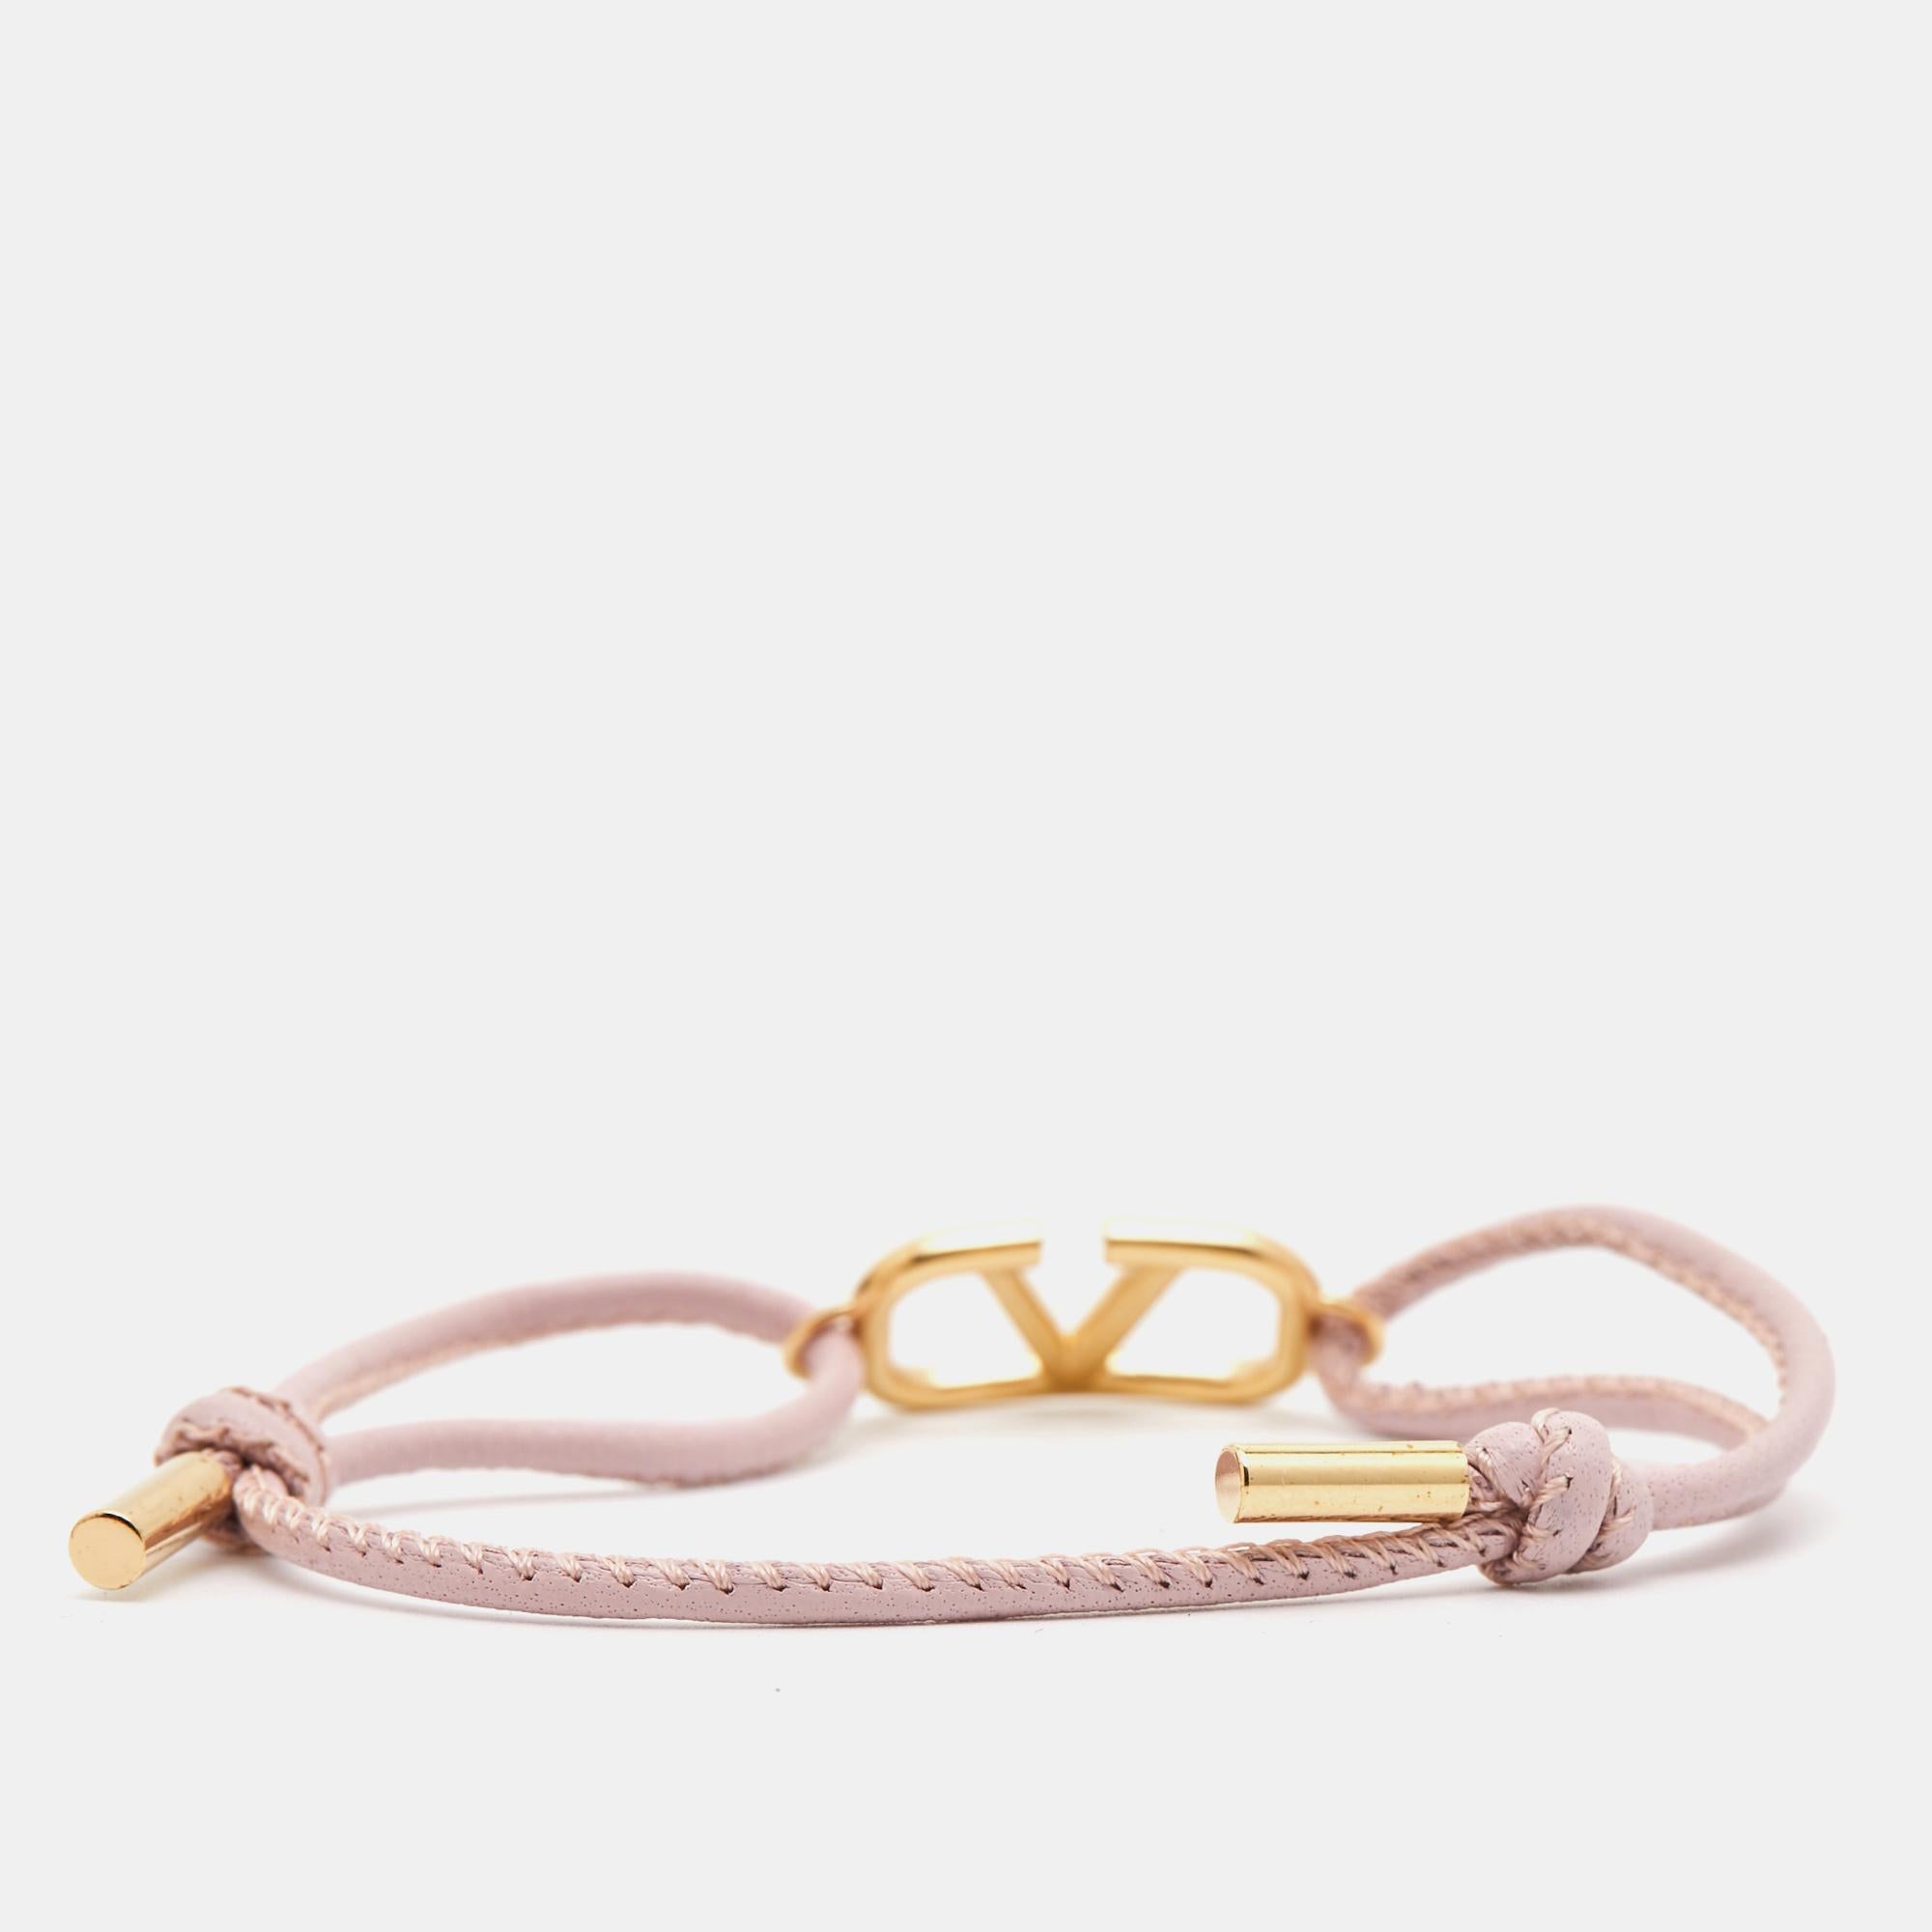 Ajoutez la magie de Valentino à votre façon d'accessoiriser avec ce bracelet. Il est doté d'un simple cordon en cuir et du logo VLOGO en métal doré.

